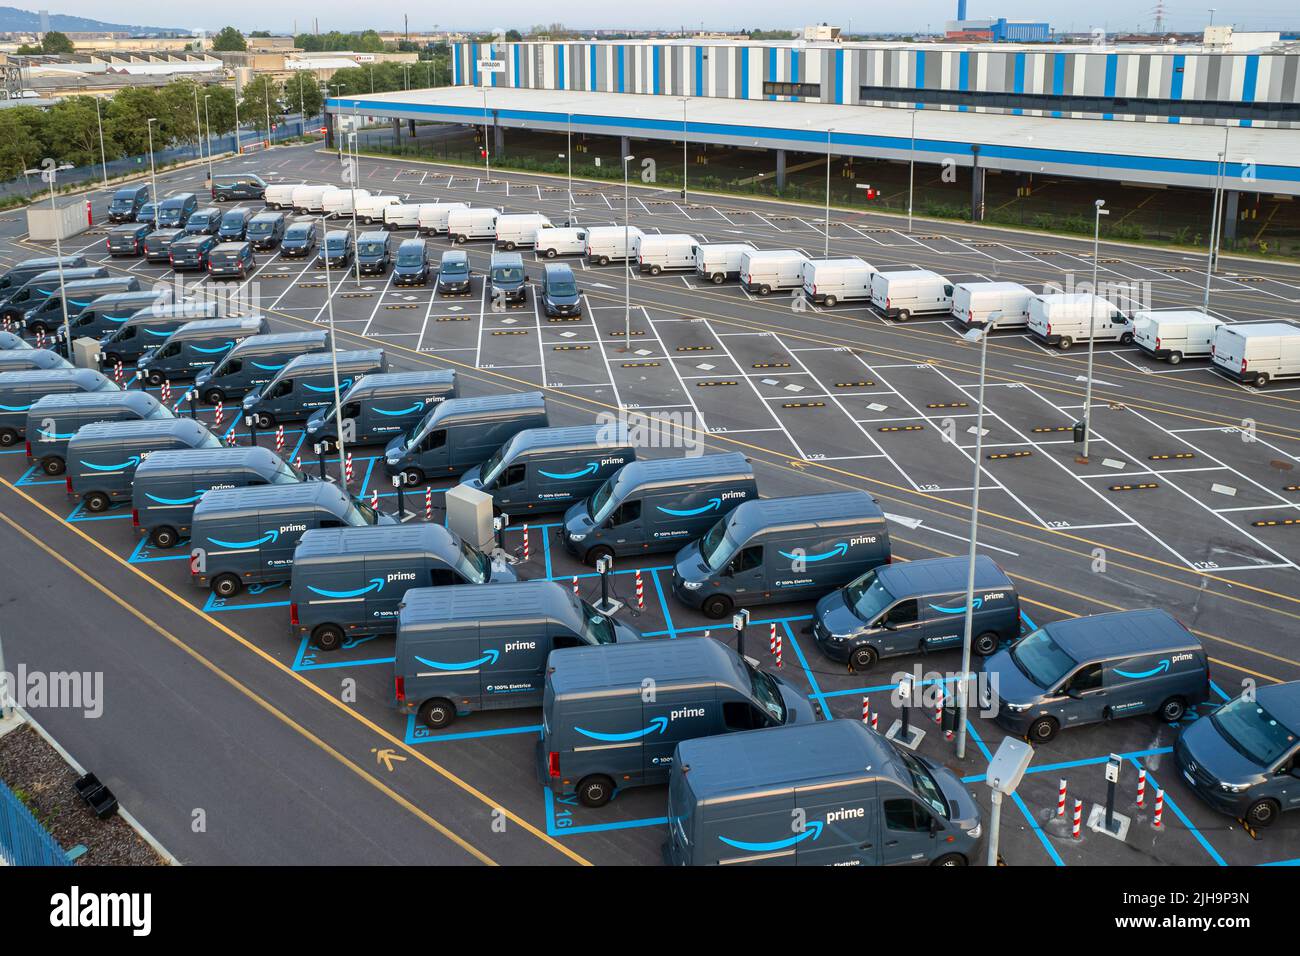 Vista dall'alto dei furgoni elettrici Amazon prime, parcheggiati presso il centro logistico di Amazon. Torino, Italia - Luglio 2022 Foto Stock